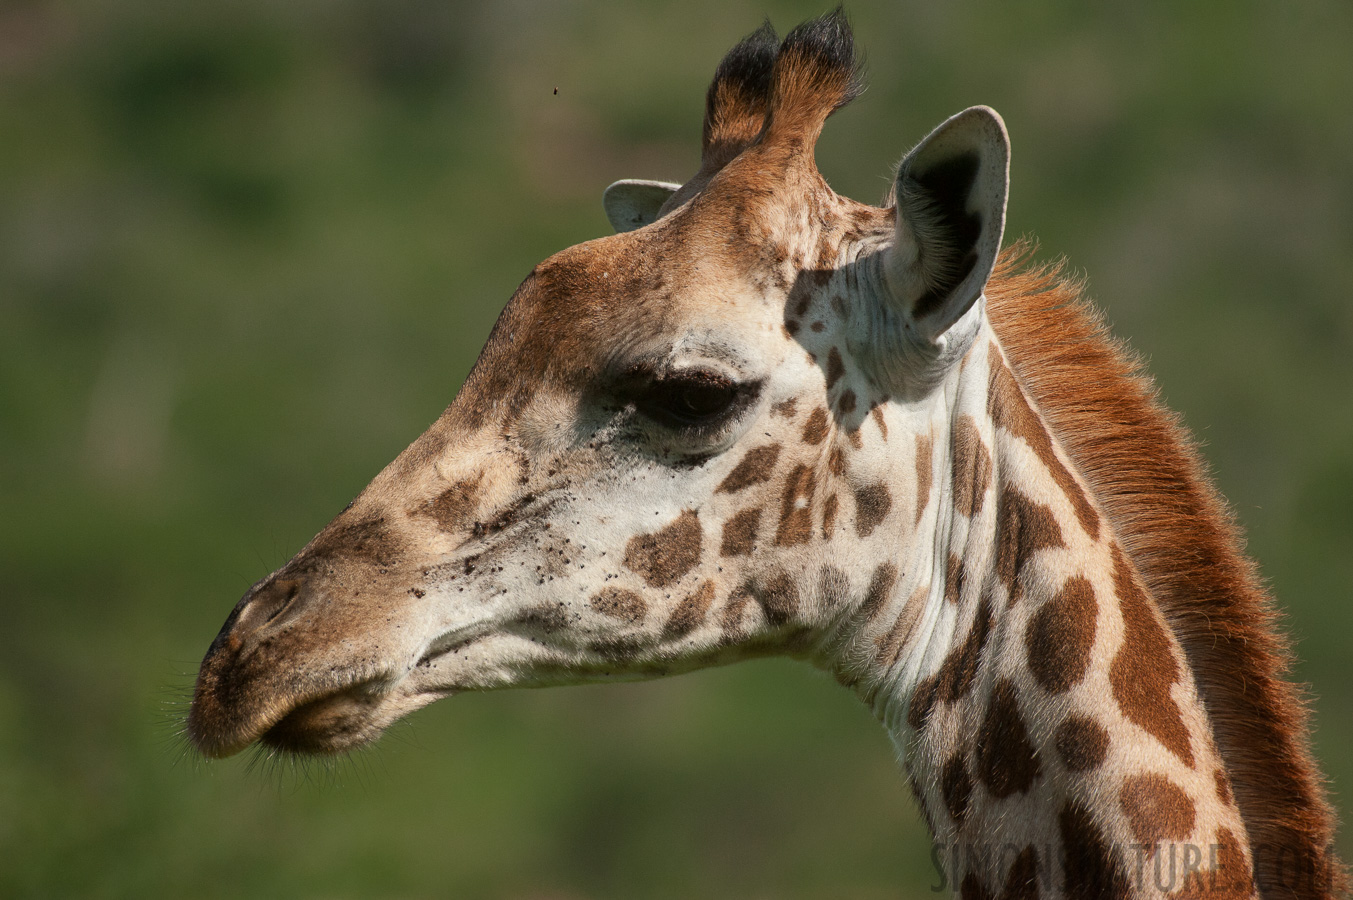 Giraffa tippelskirchi [550 mm, 1/5000 sec at f / 8.0, ISO 1600]